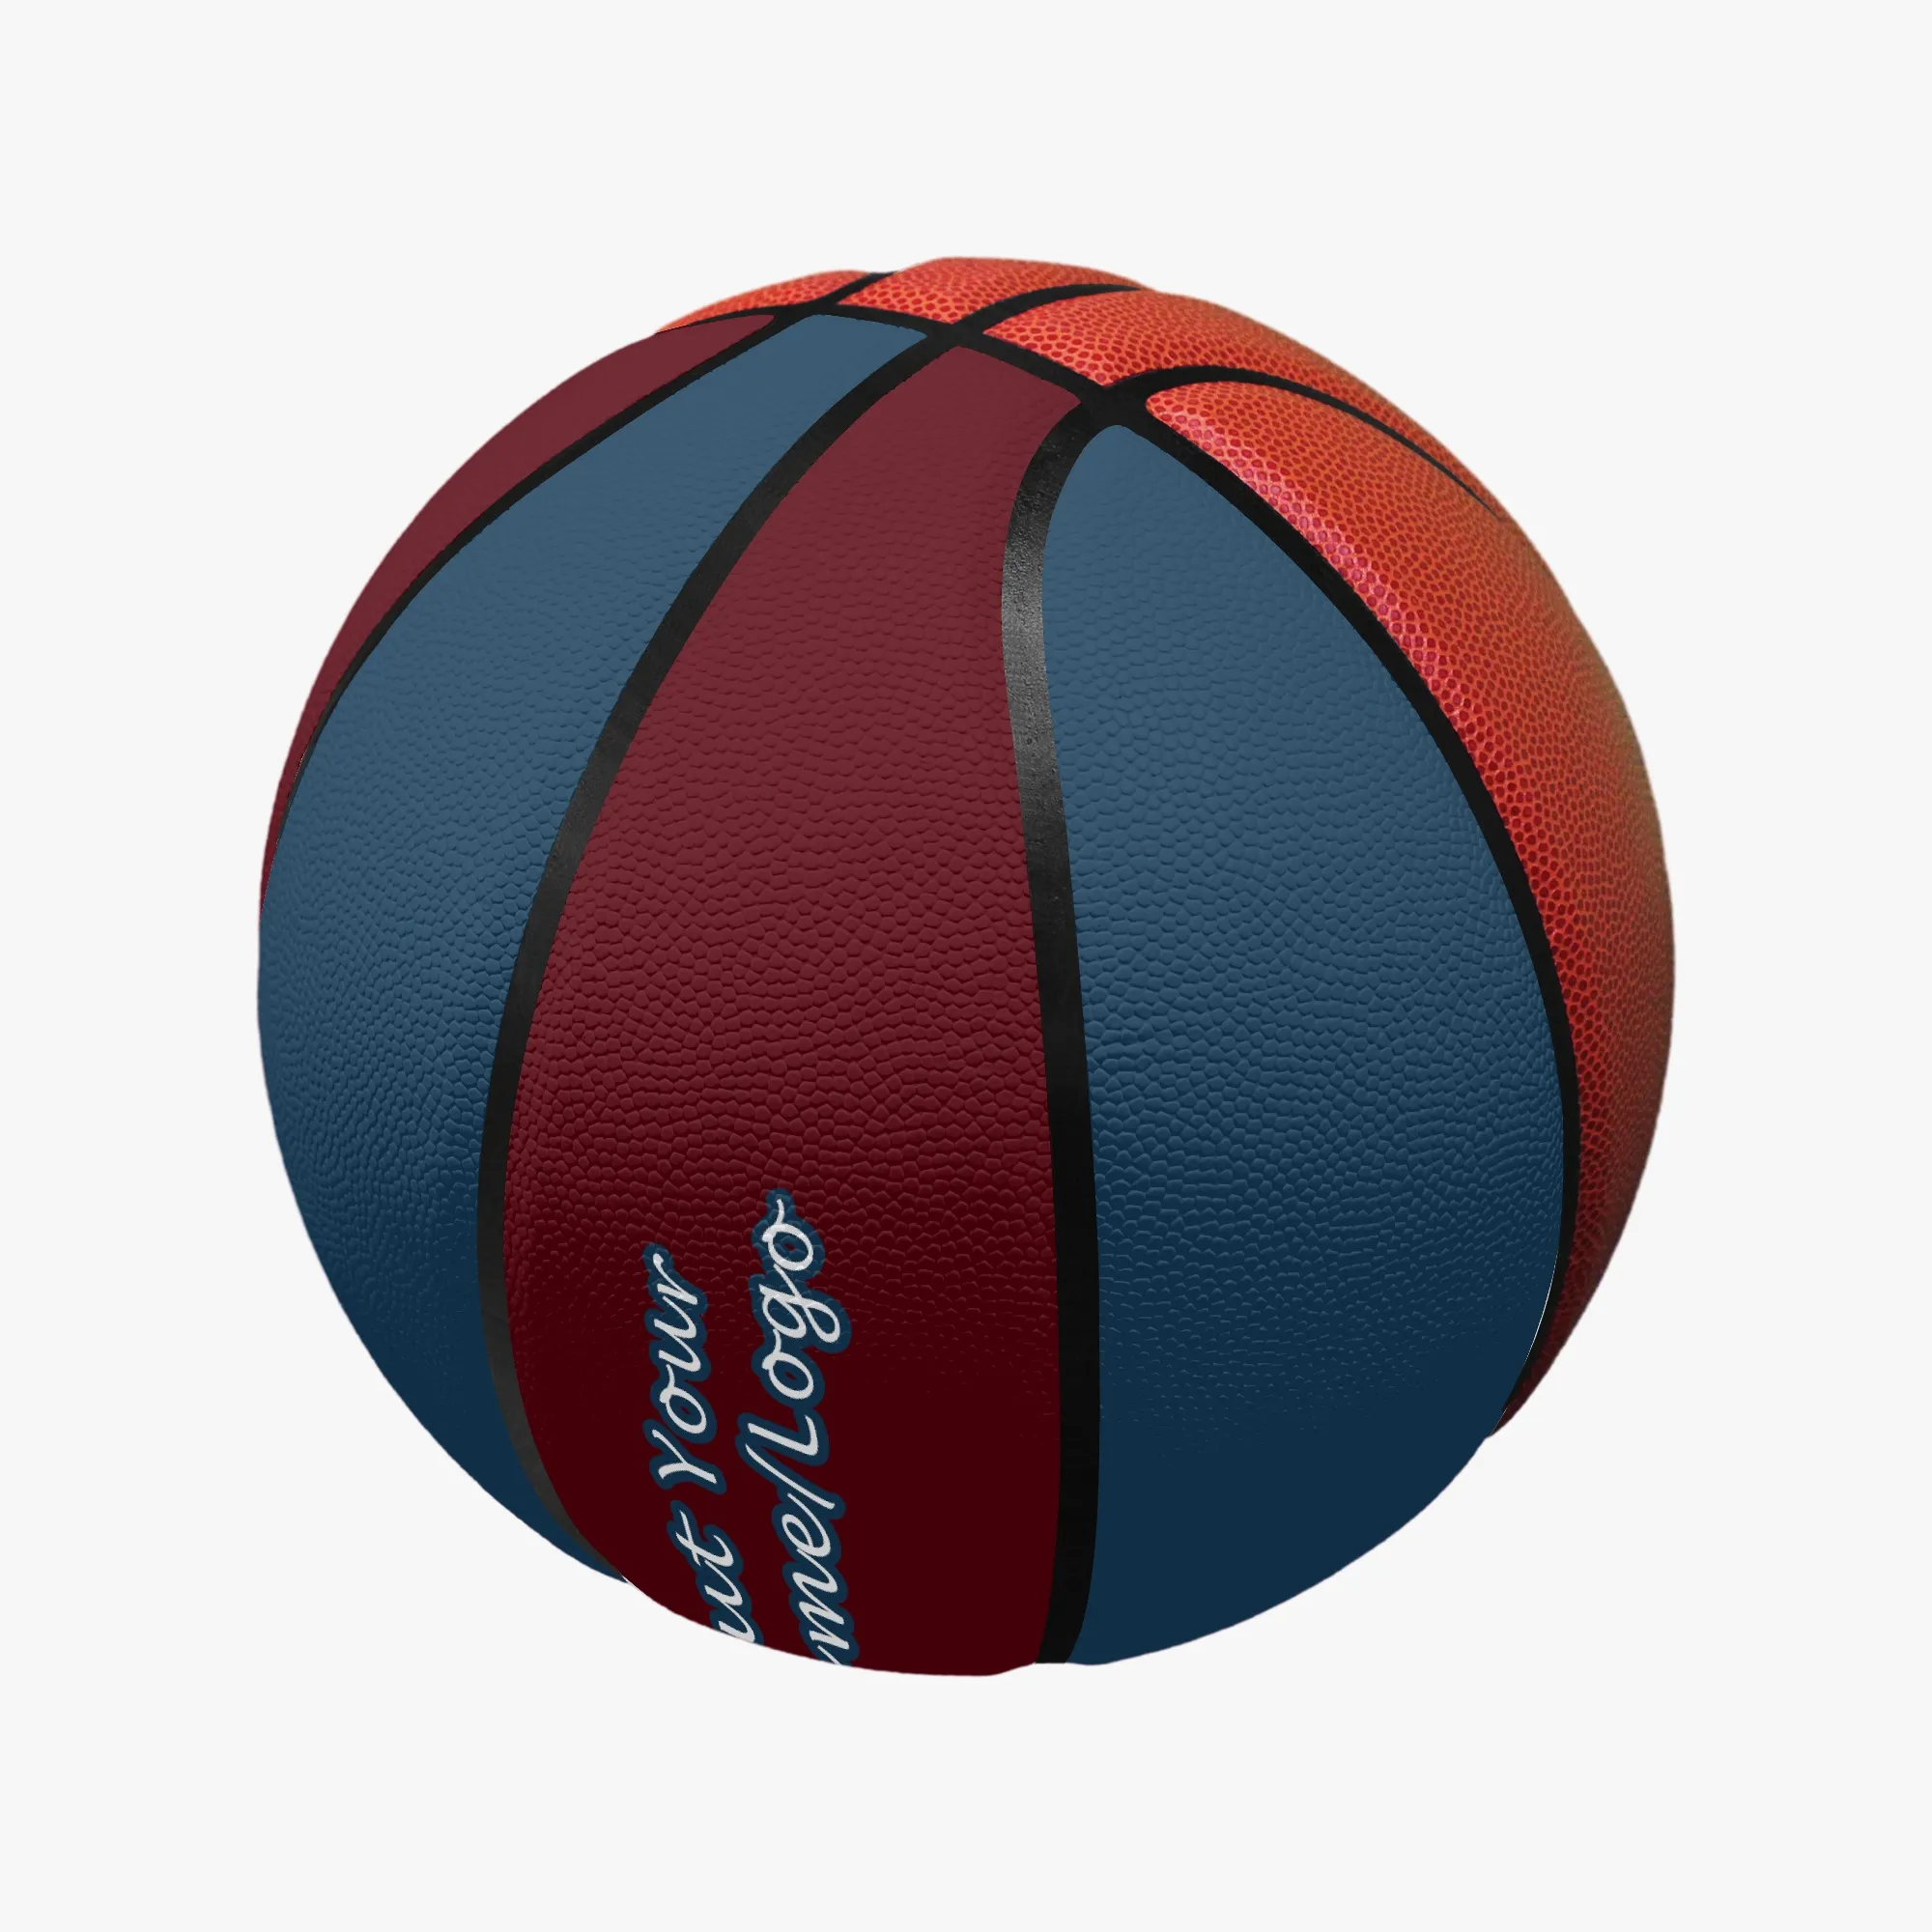 Basquete personalizado diy basquete masculino feminino esportes ao ar livre jogo de basquete equipe preto azul roxo equipamento de treinamento vendas diretas da fábrica ST2-44